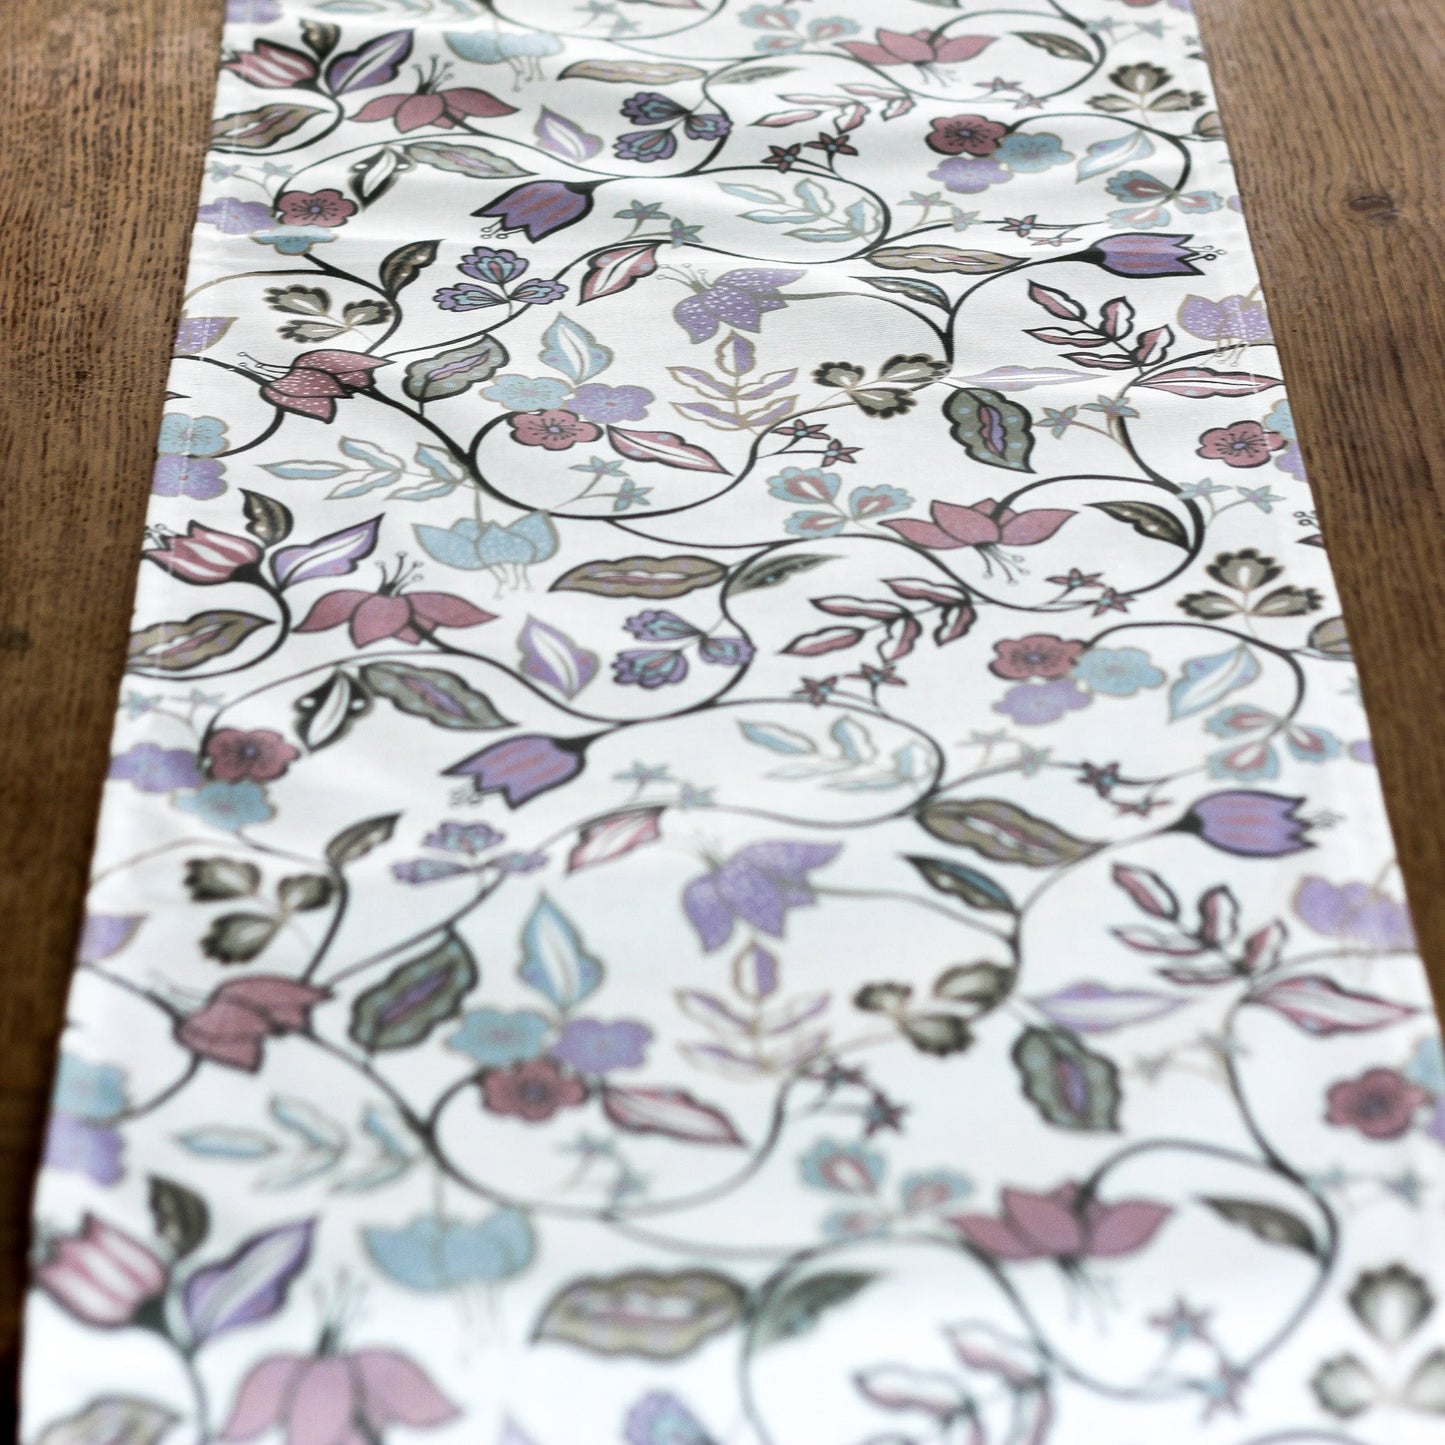 Vintage Floral Tablecloth - Lavender